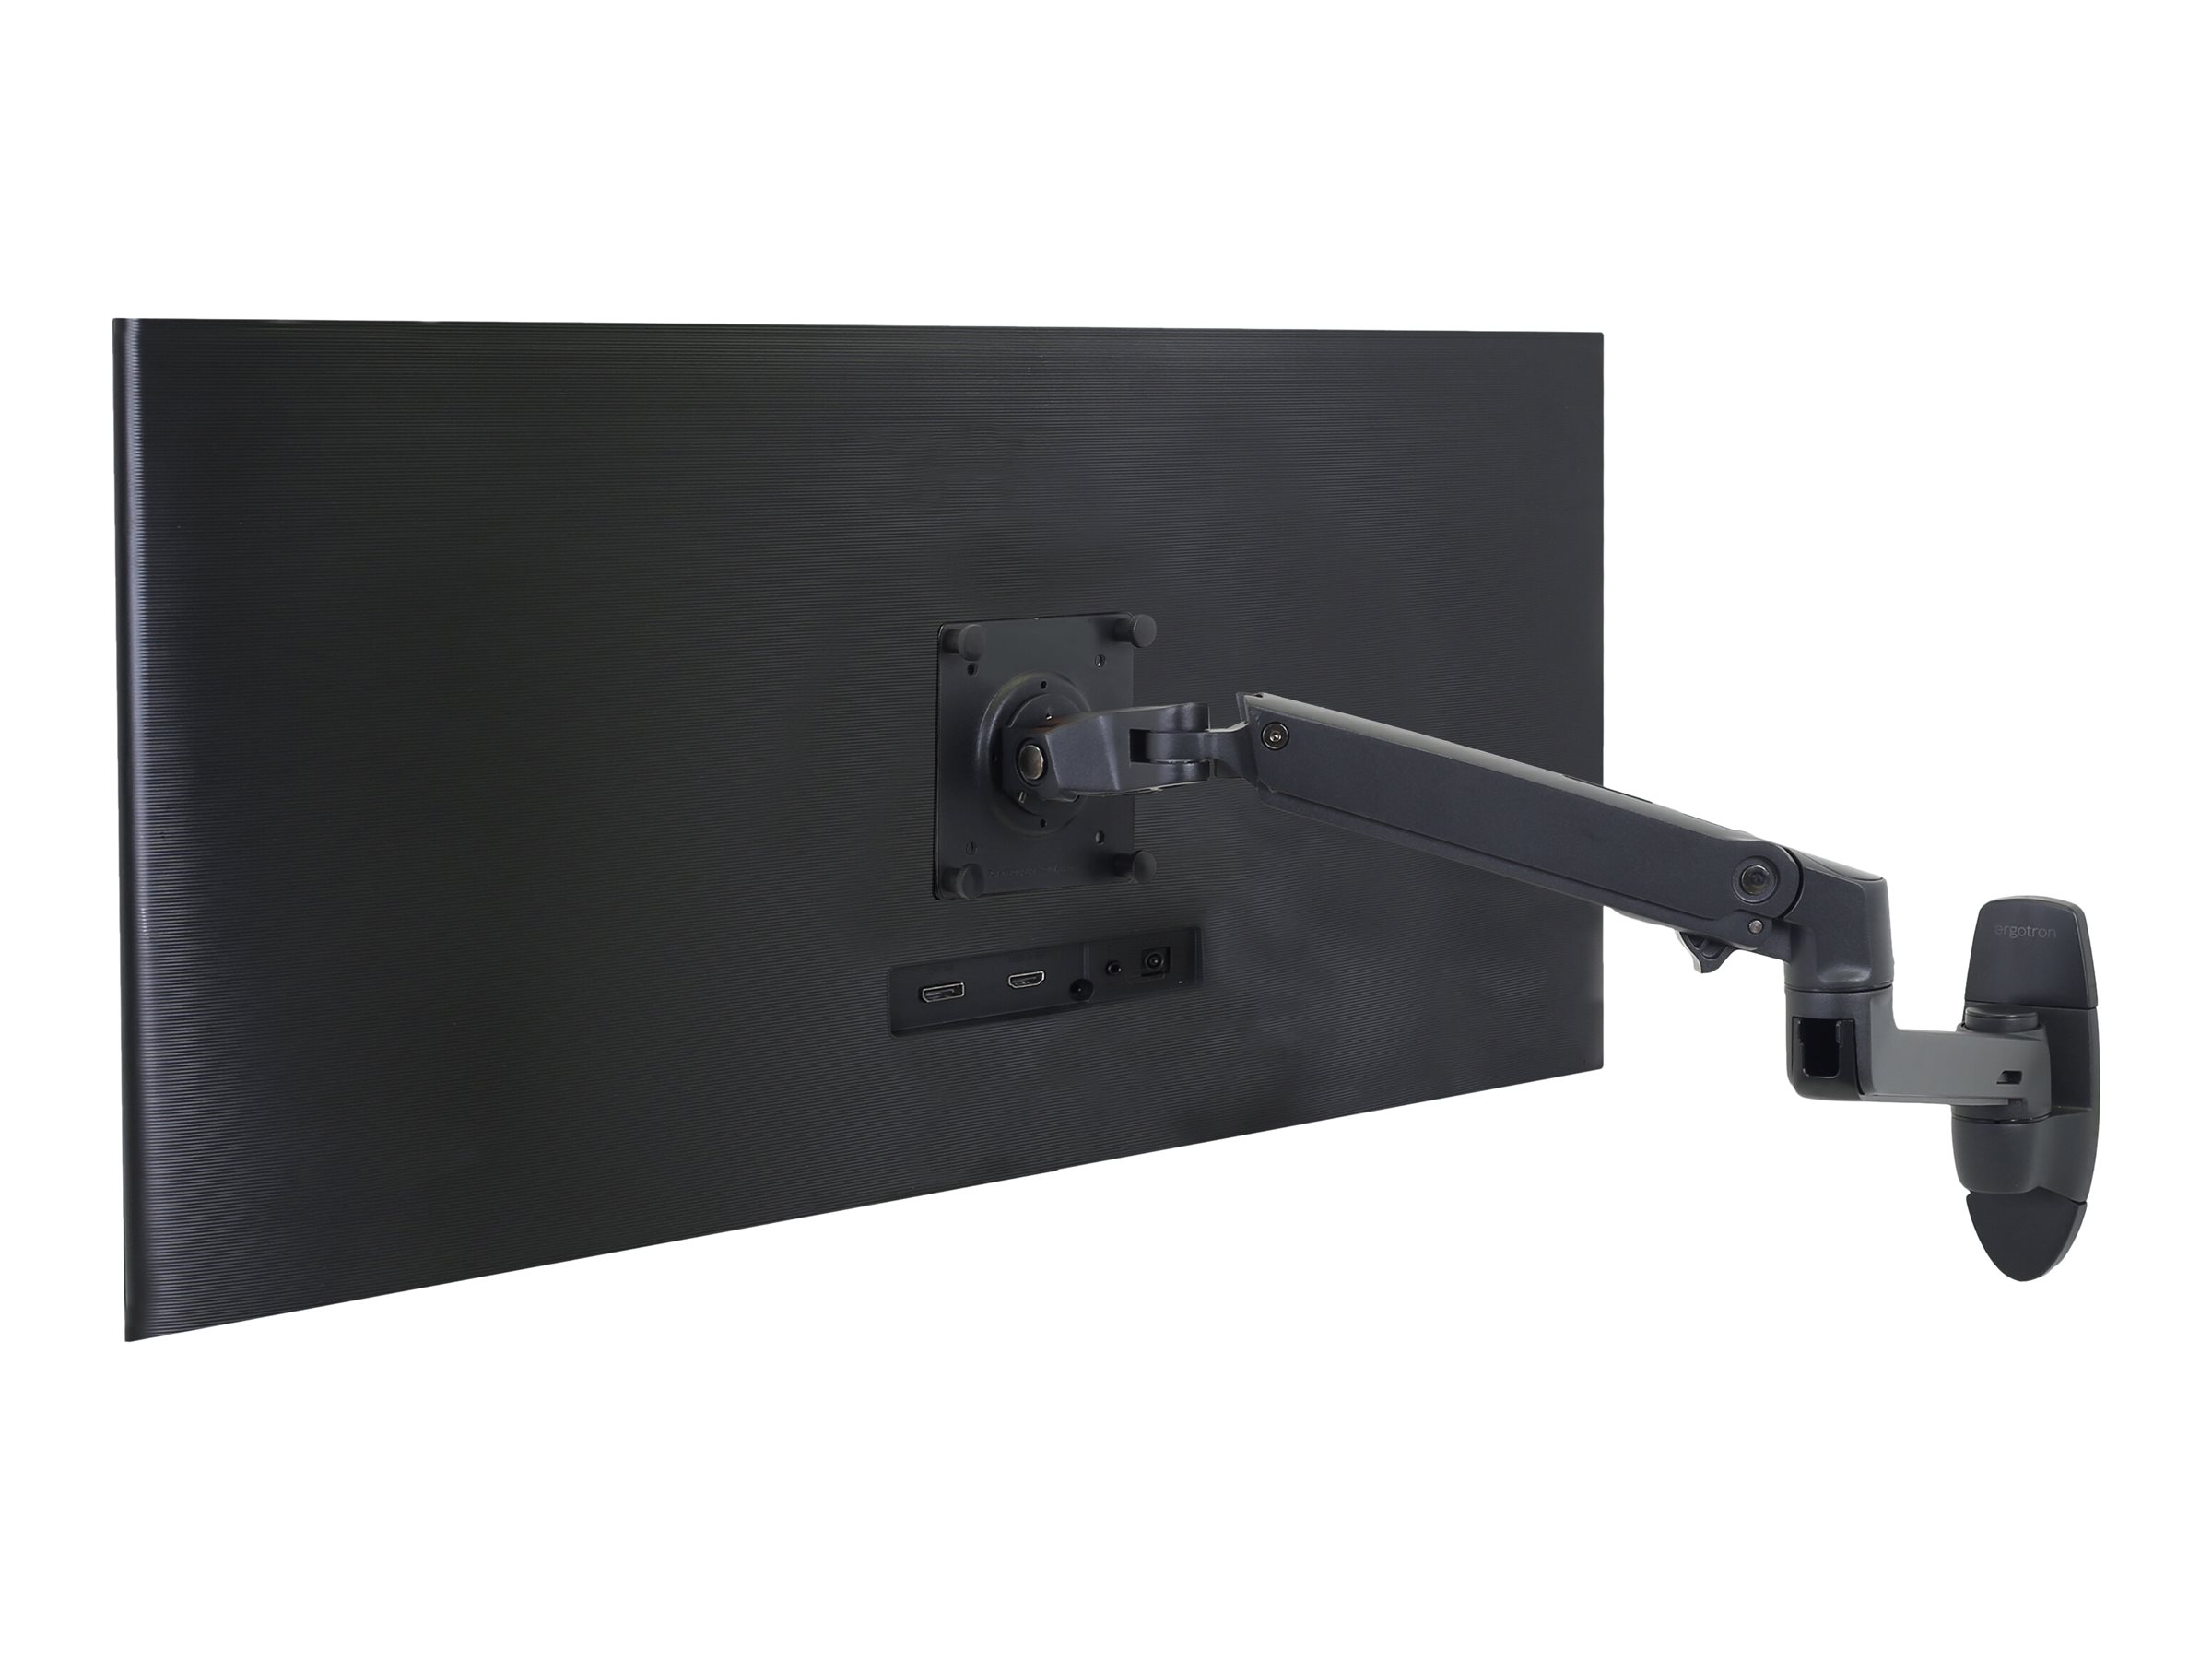 Ergotron LX - Kit de montage (bras articulé, adaptateur d'extension, base de support mural) - pour Écran LCD - noir mat - Taille d'écran : jusqu'à 34 pouces - montable sur mur - 45-243-224 - Accessoires pour écran